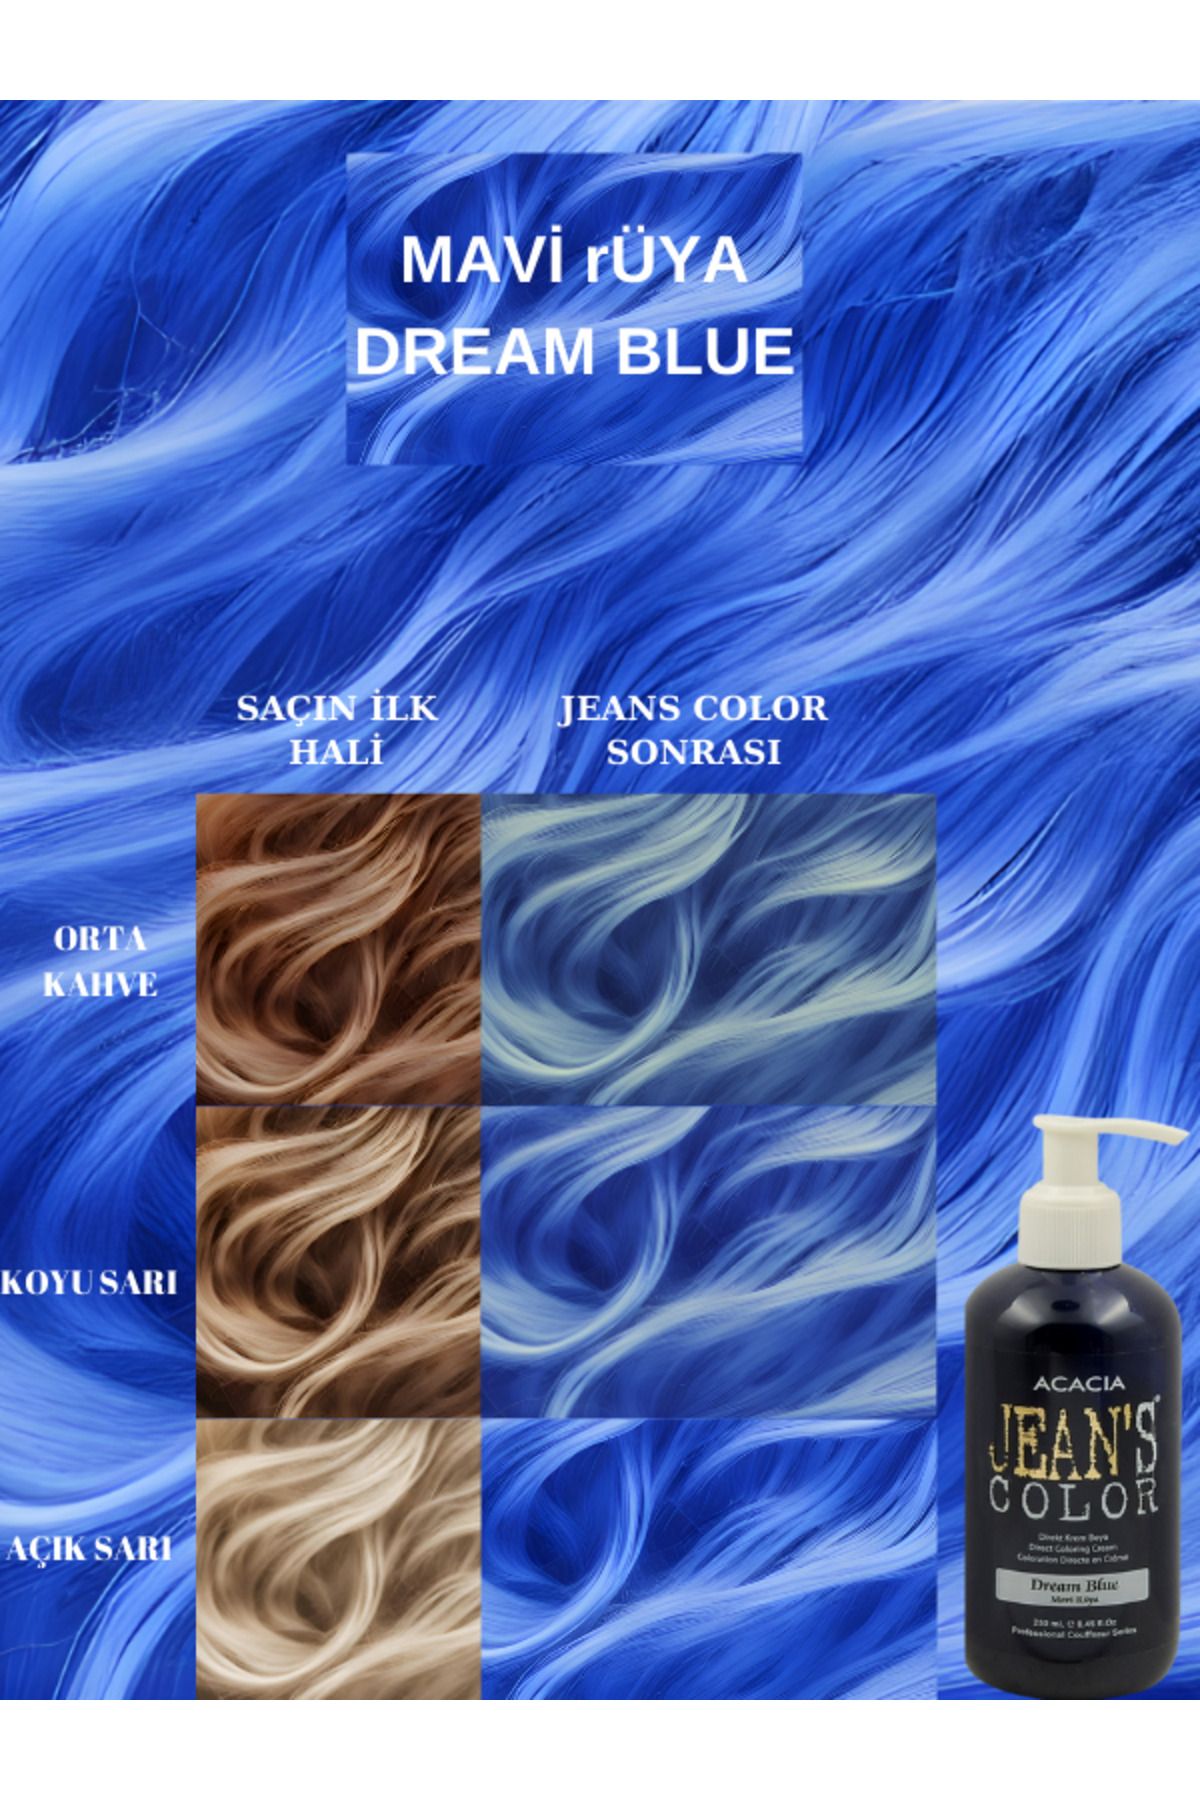 jeans color Amonyaksız Mavi Rüya Renkli Saç Boyası 250 ml Kokusuz Su Bazlı Dream Blue Hair Dye